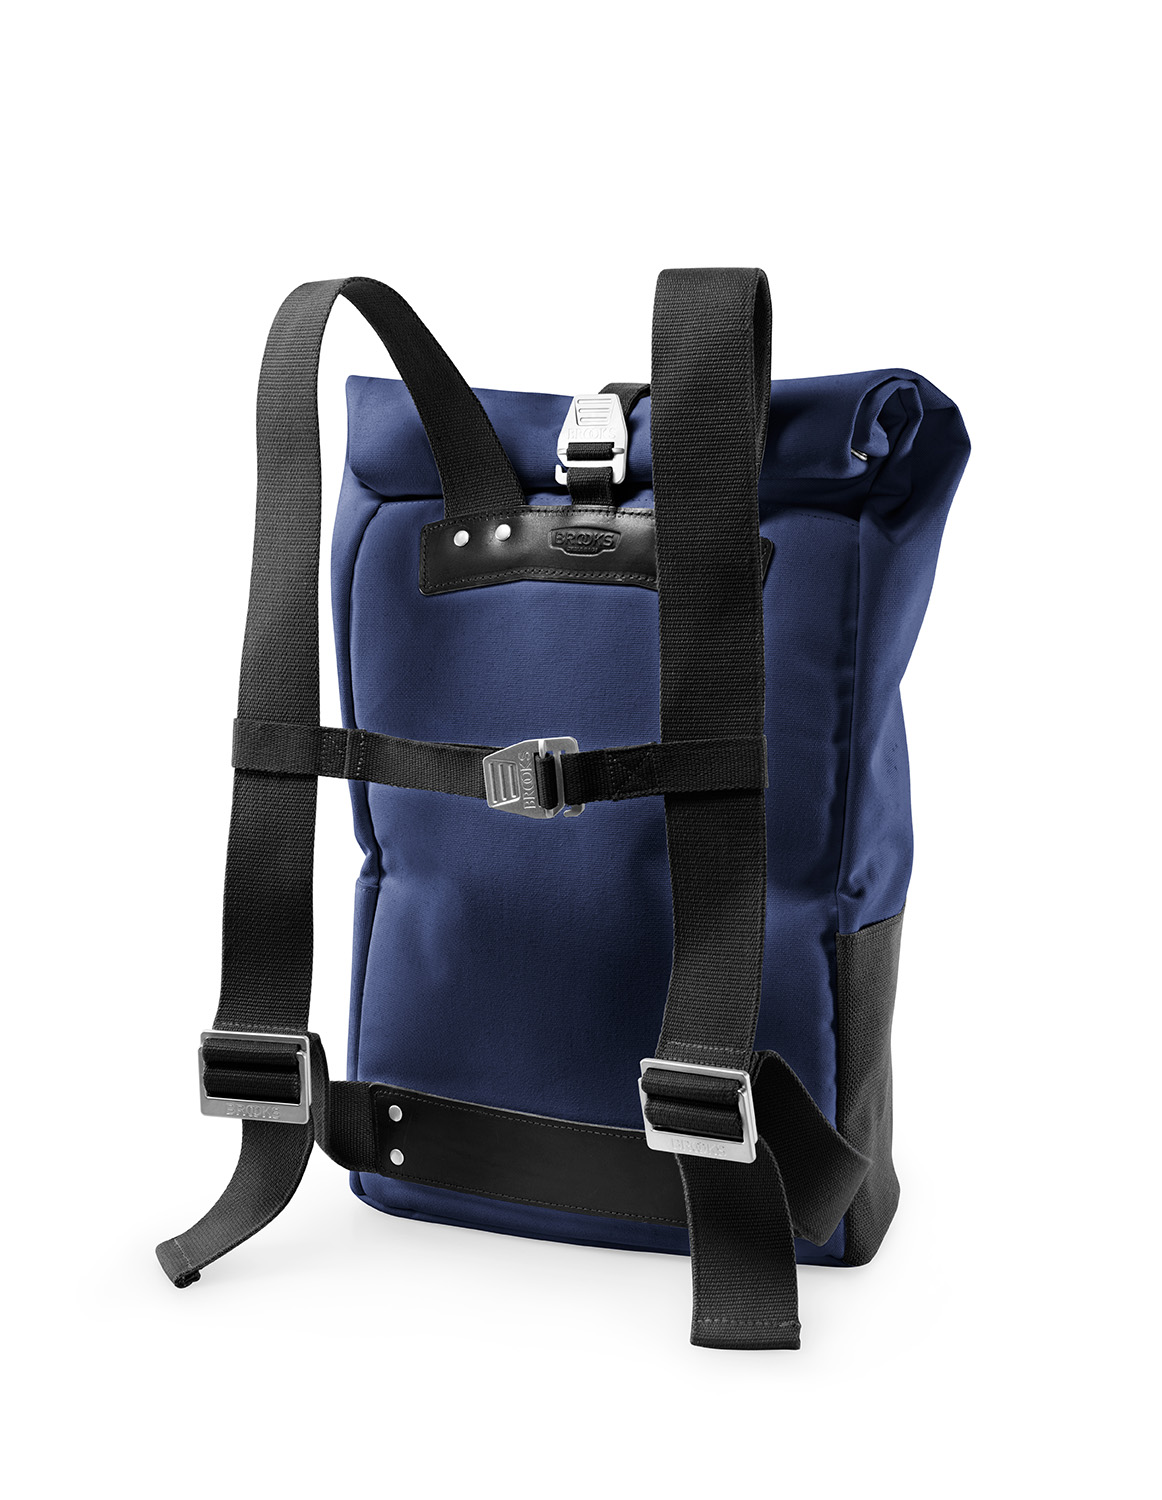 Hackney backpack blue black   back